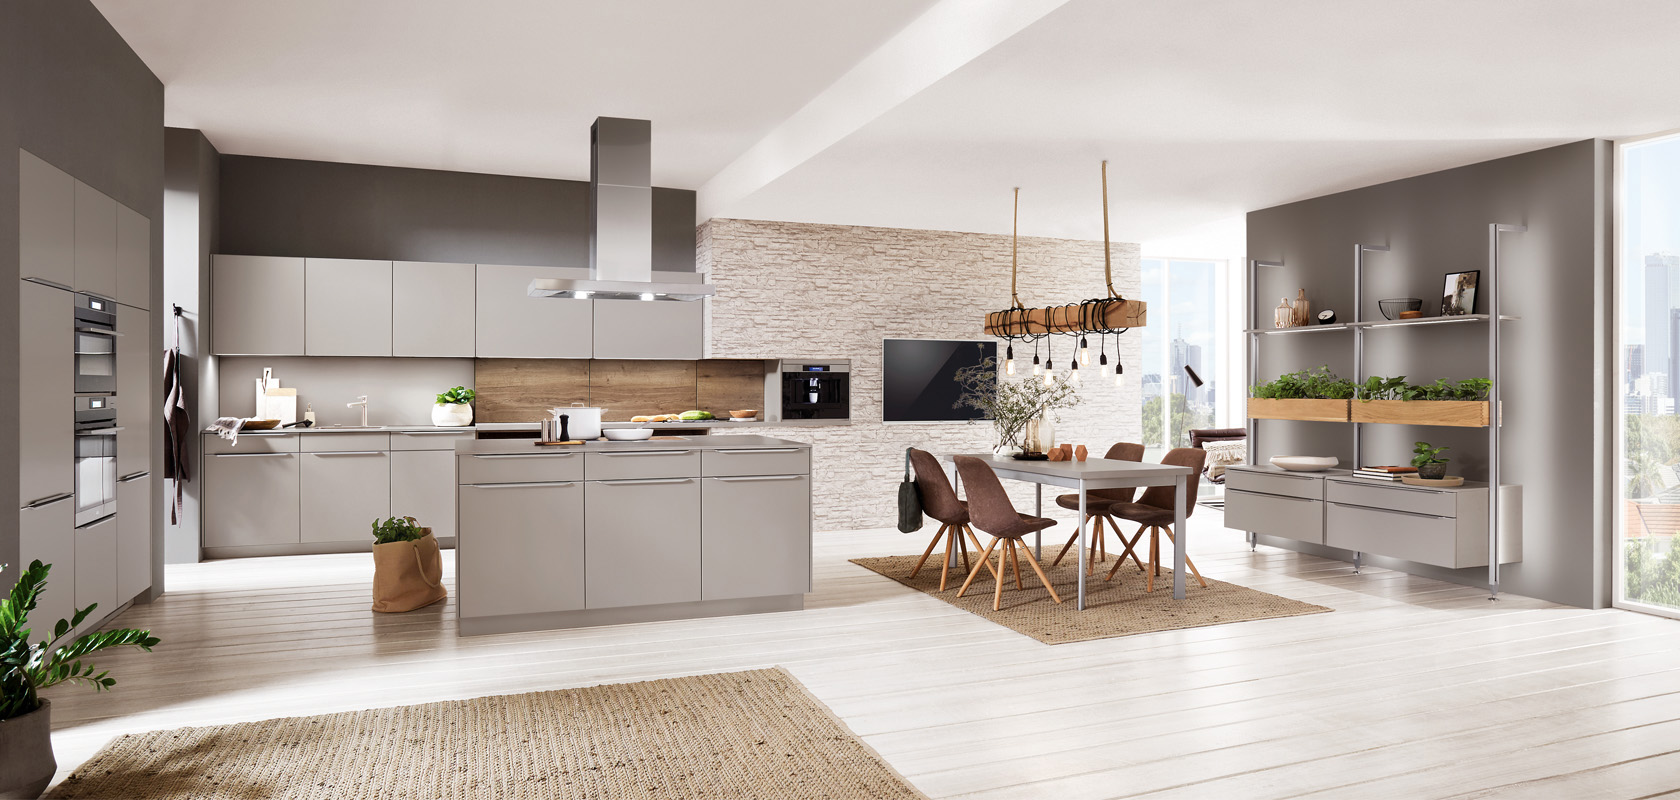 Interior de cocina moderna con líneas limpias, que cuenta con gabinetes elegantes, electrodomésticos de acero inoxidable y un acogedor comedor bañado por luz natural.